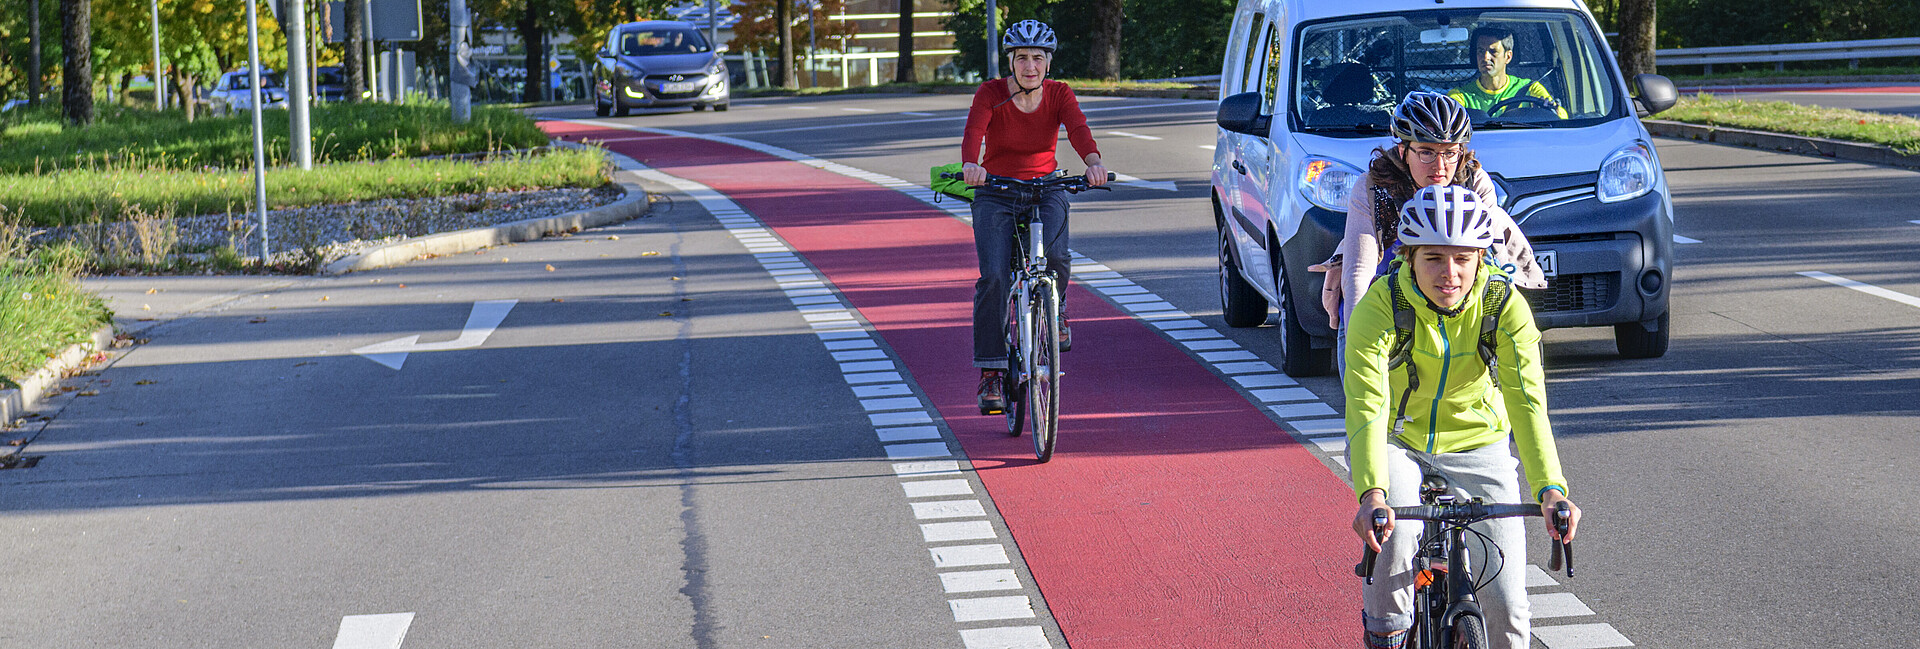 Radfahrer auf einem rot gekennzeichneten Radweg, im Hintergrund ein Auto